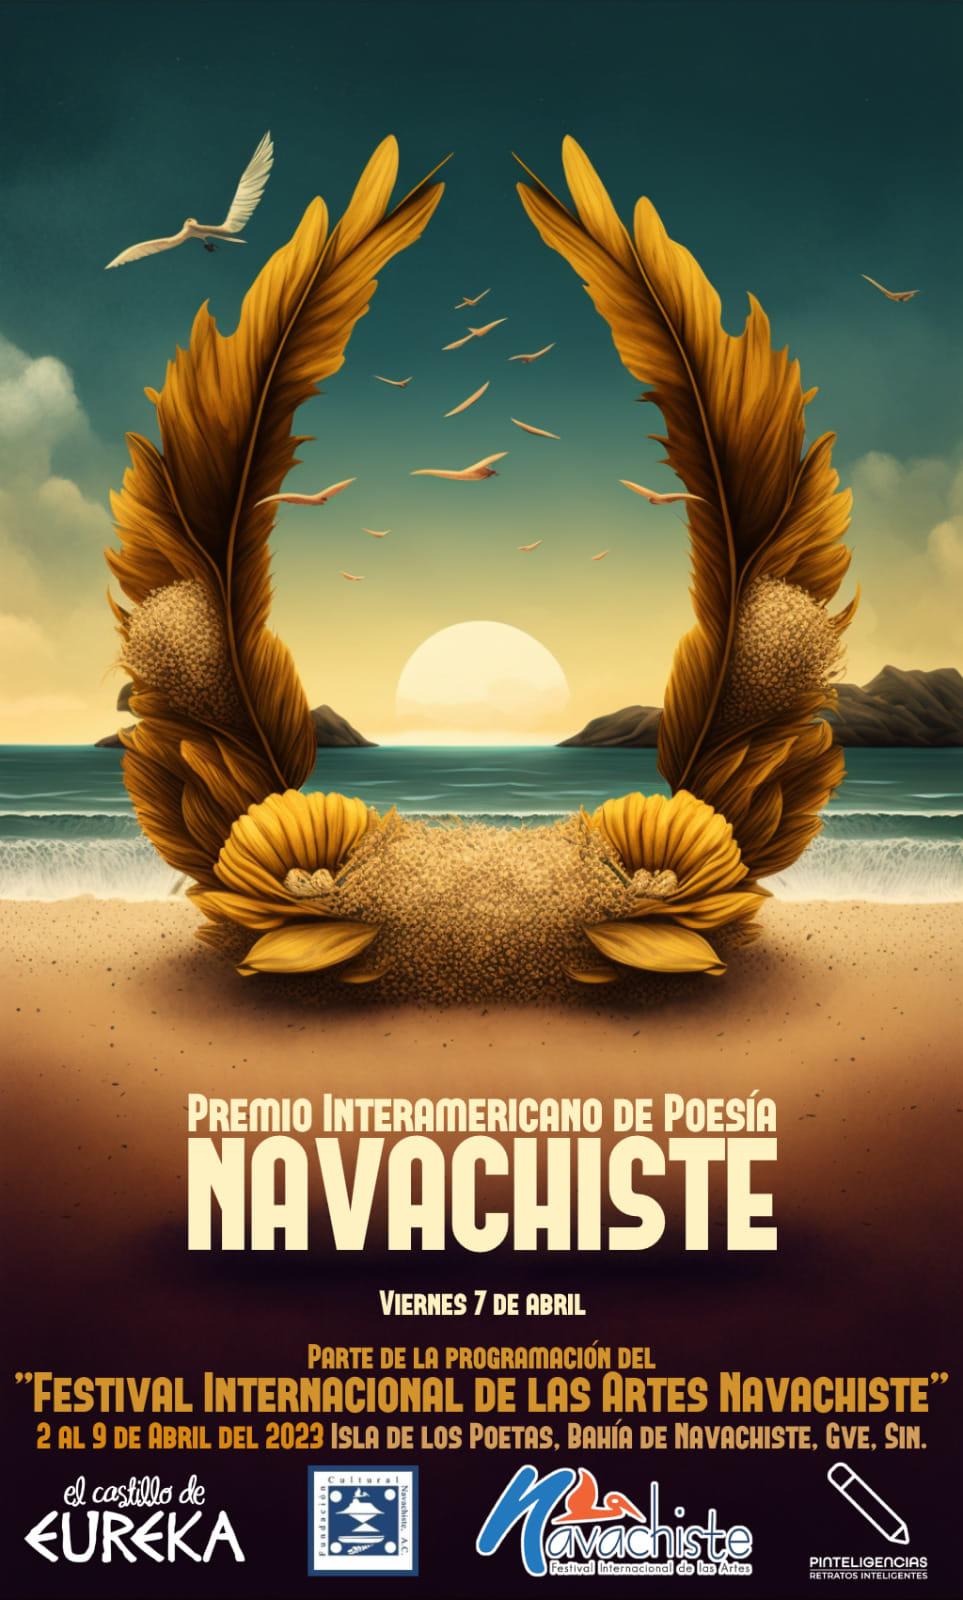 $!Durante el festival se entregará el Premmio Interamericano de Poesía Navachiste.